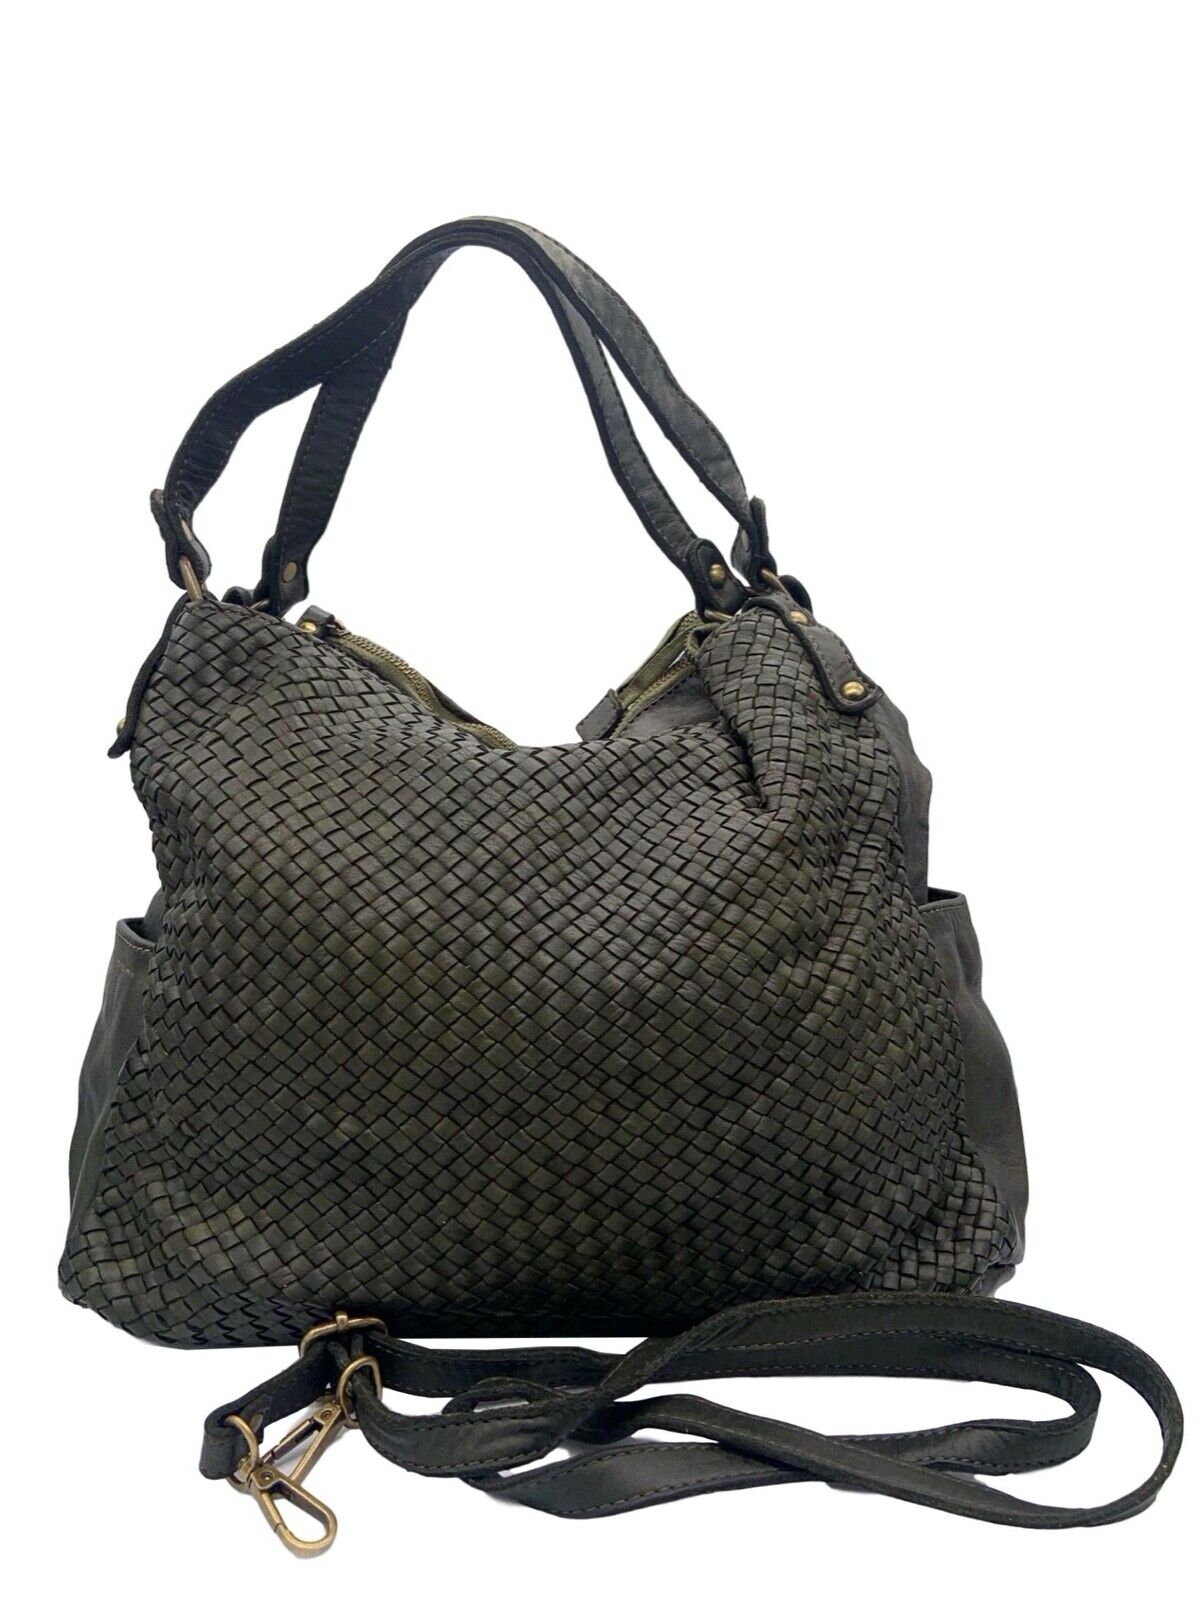 BZNA Bag Yuna Taupe Italy Designer Damen Handtasche Schultertasche Tasche